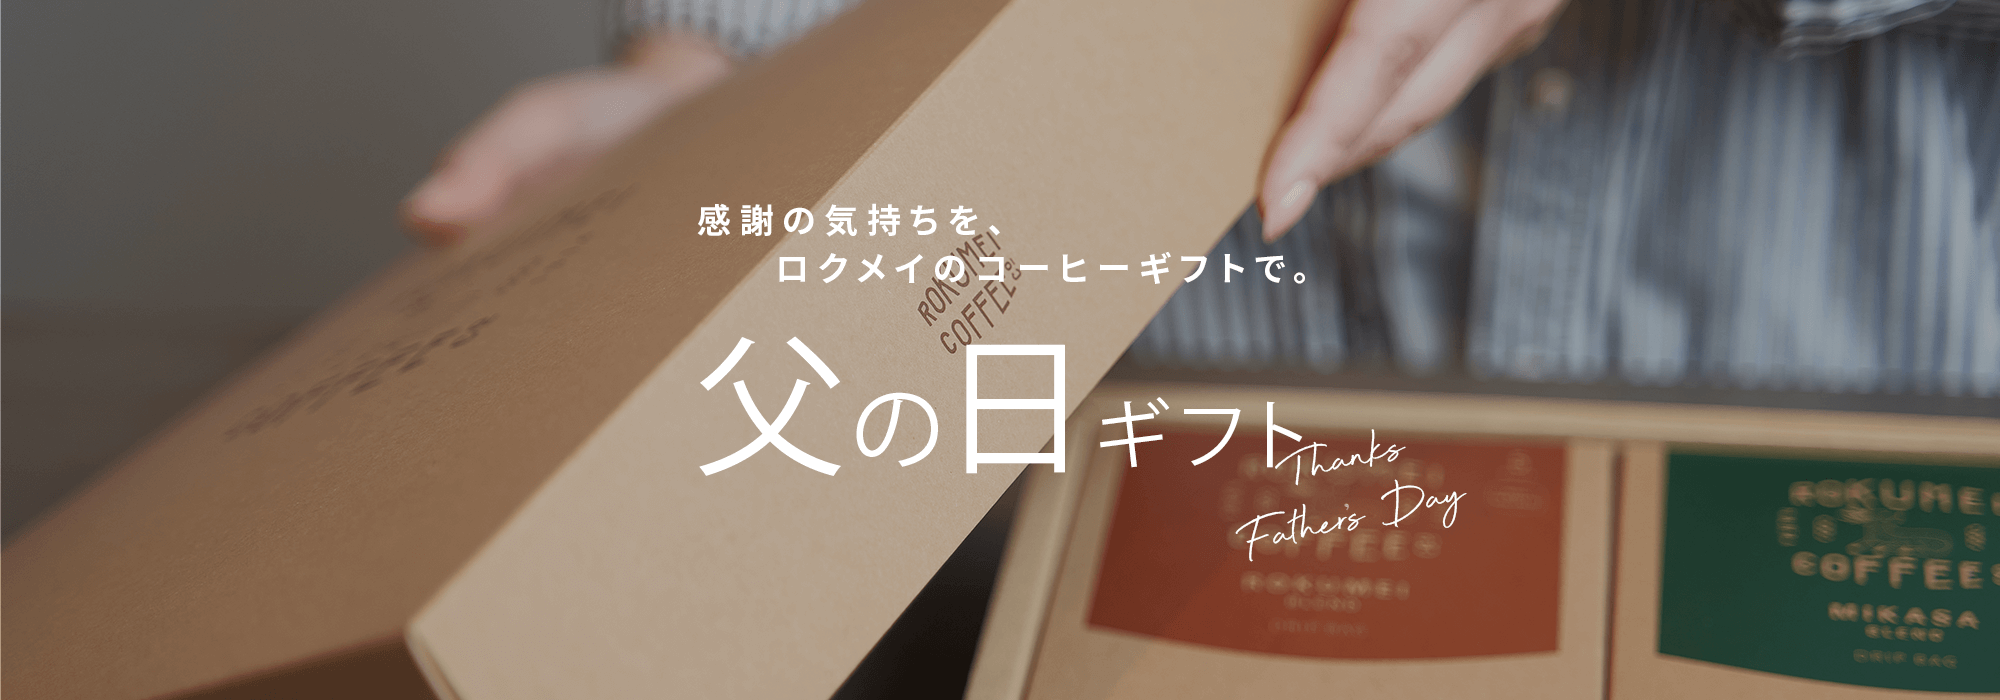 京都・鴨川のファストフード店 Piadina屋が
行楽シーズンに向けて『Piadina』の販売強化を実施